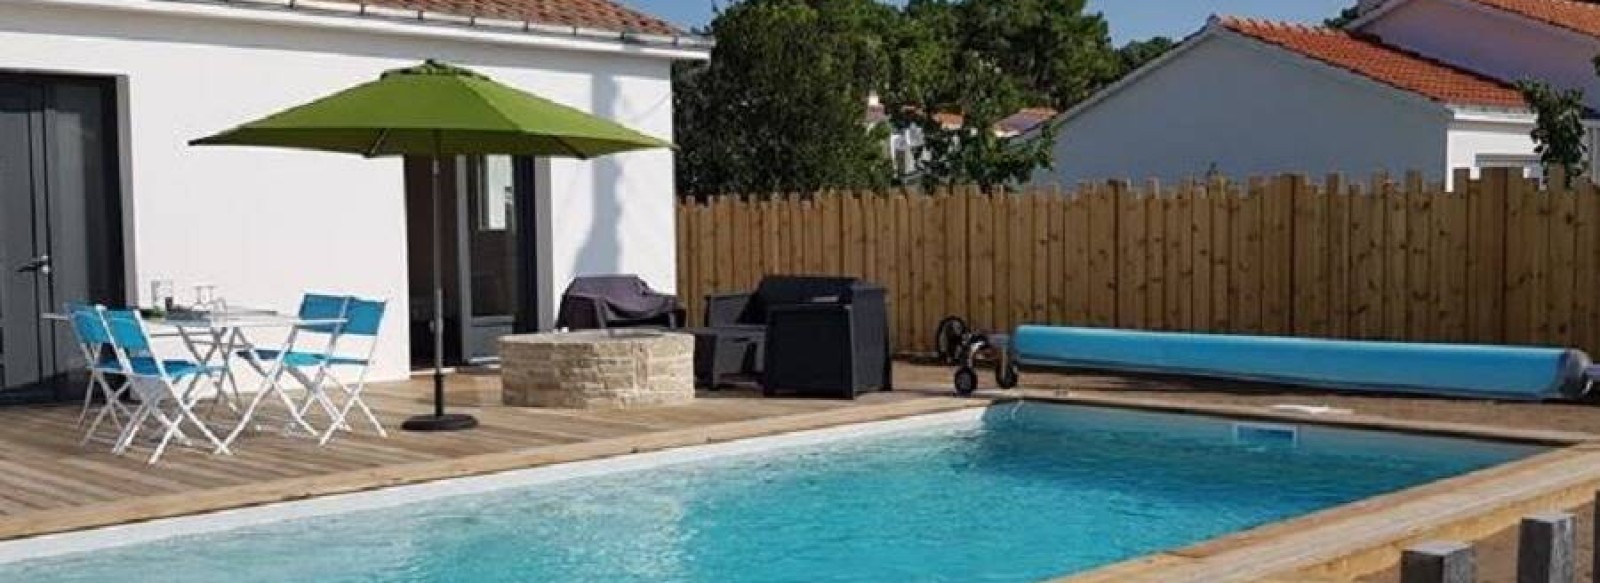 Maison de vacances avec piscine a deux pas de la foret